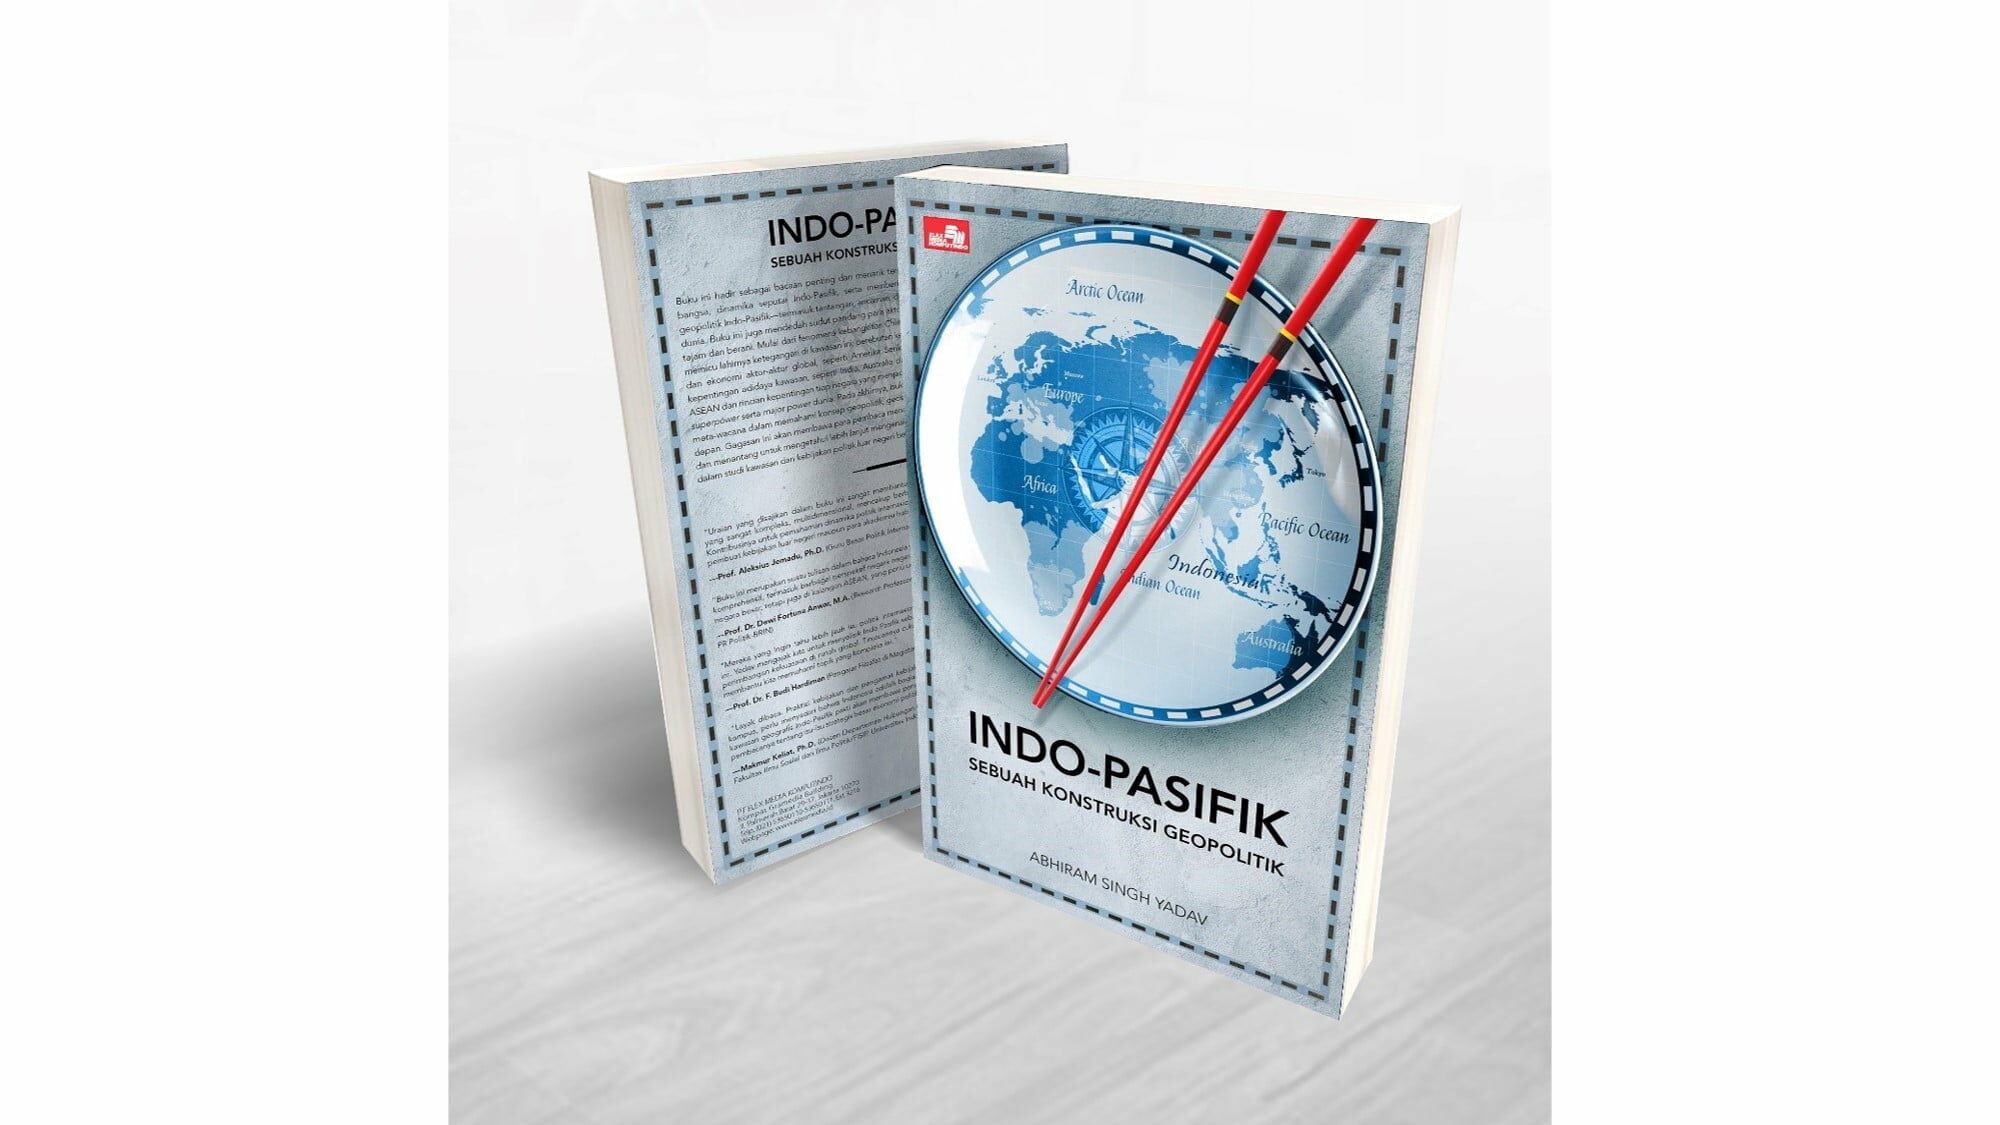 Indo-Pasifik: Sebuah Konstruksi Geopolitik